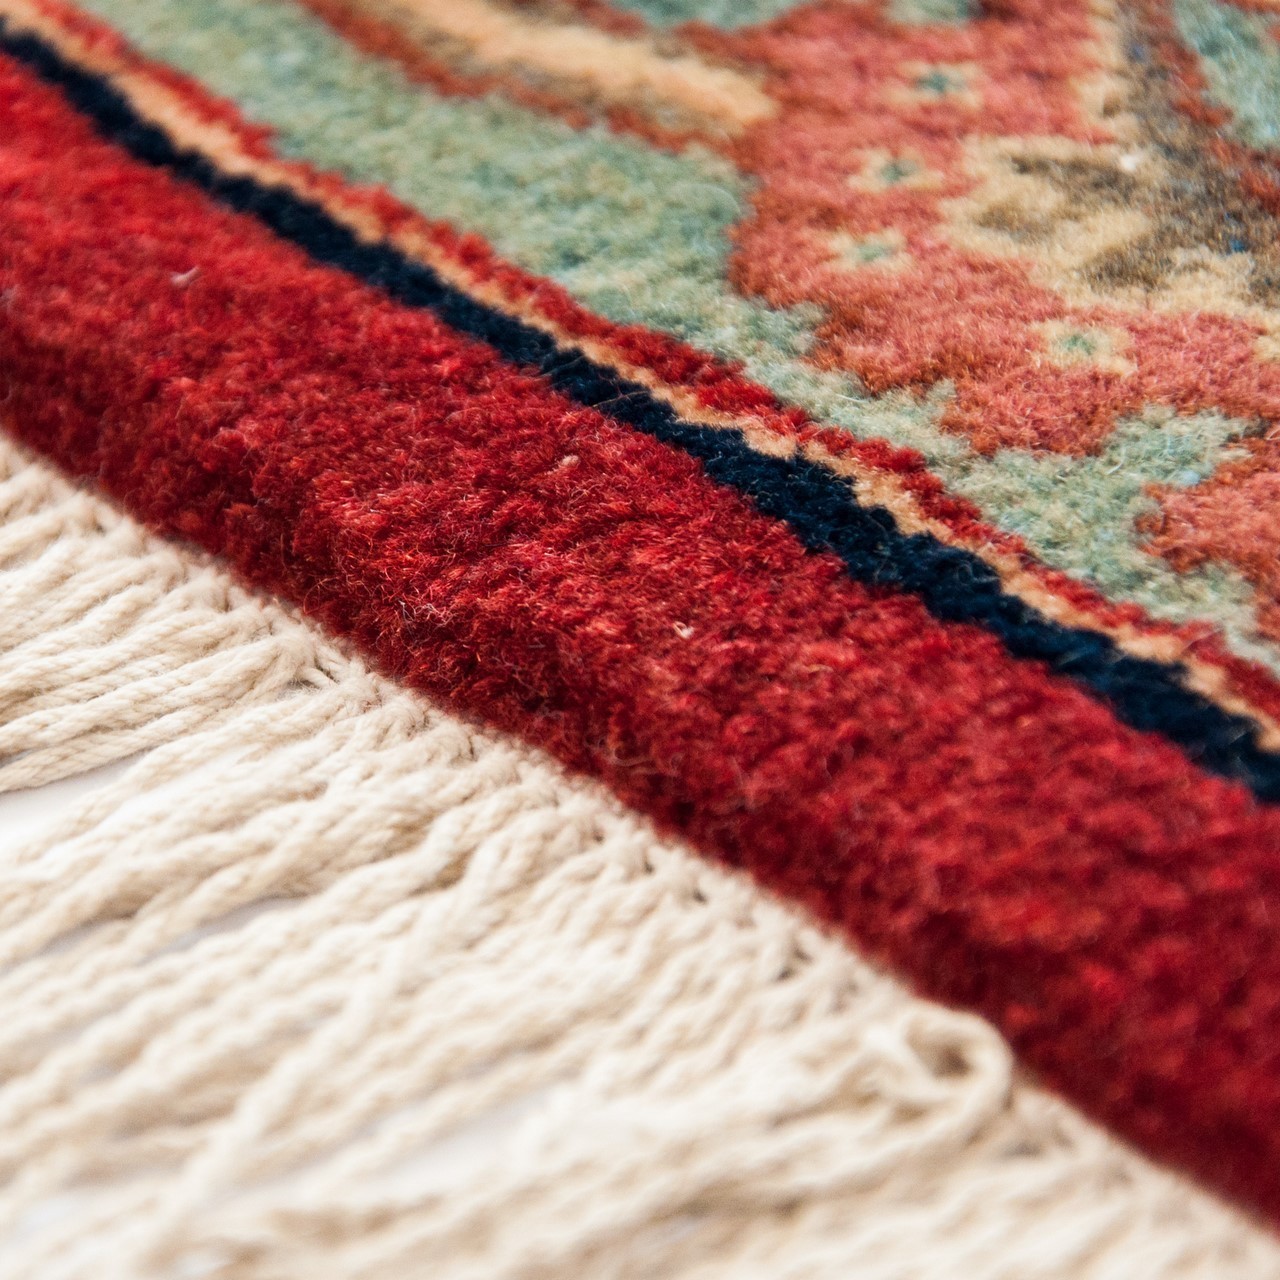 Ferahan Carpet Ref 101952